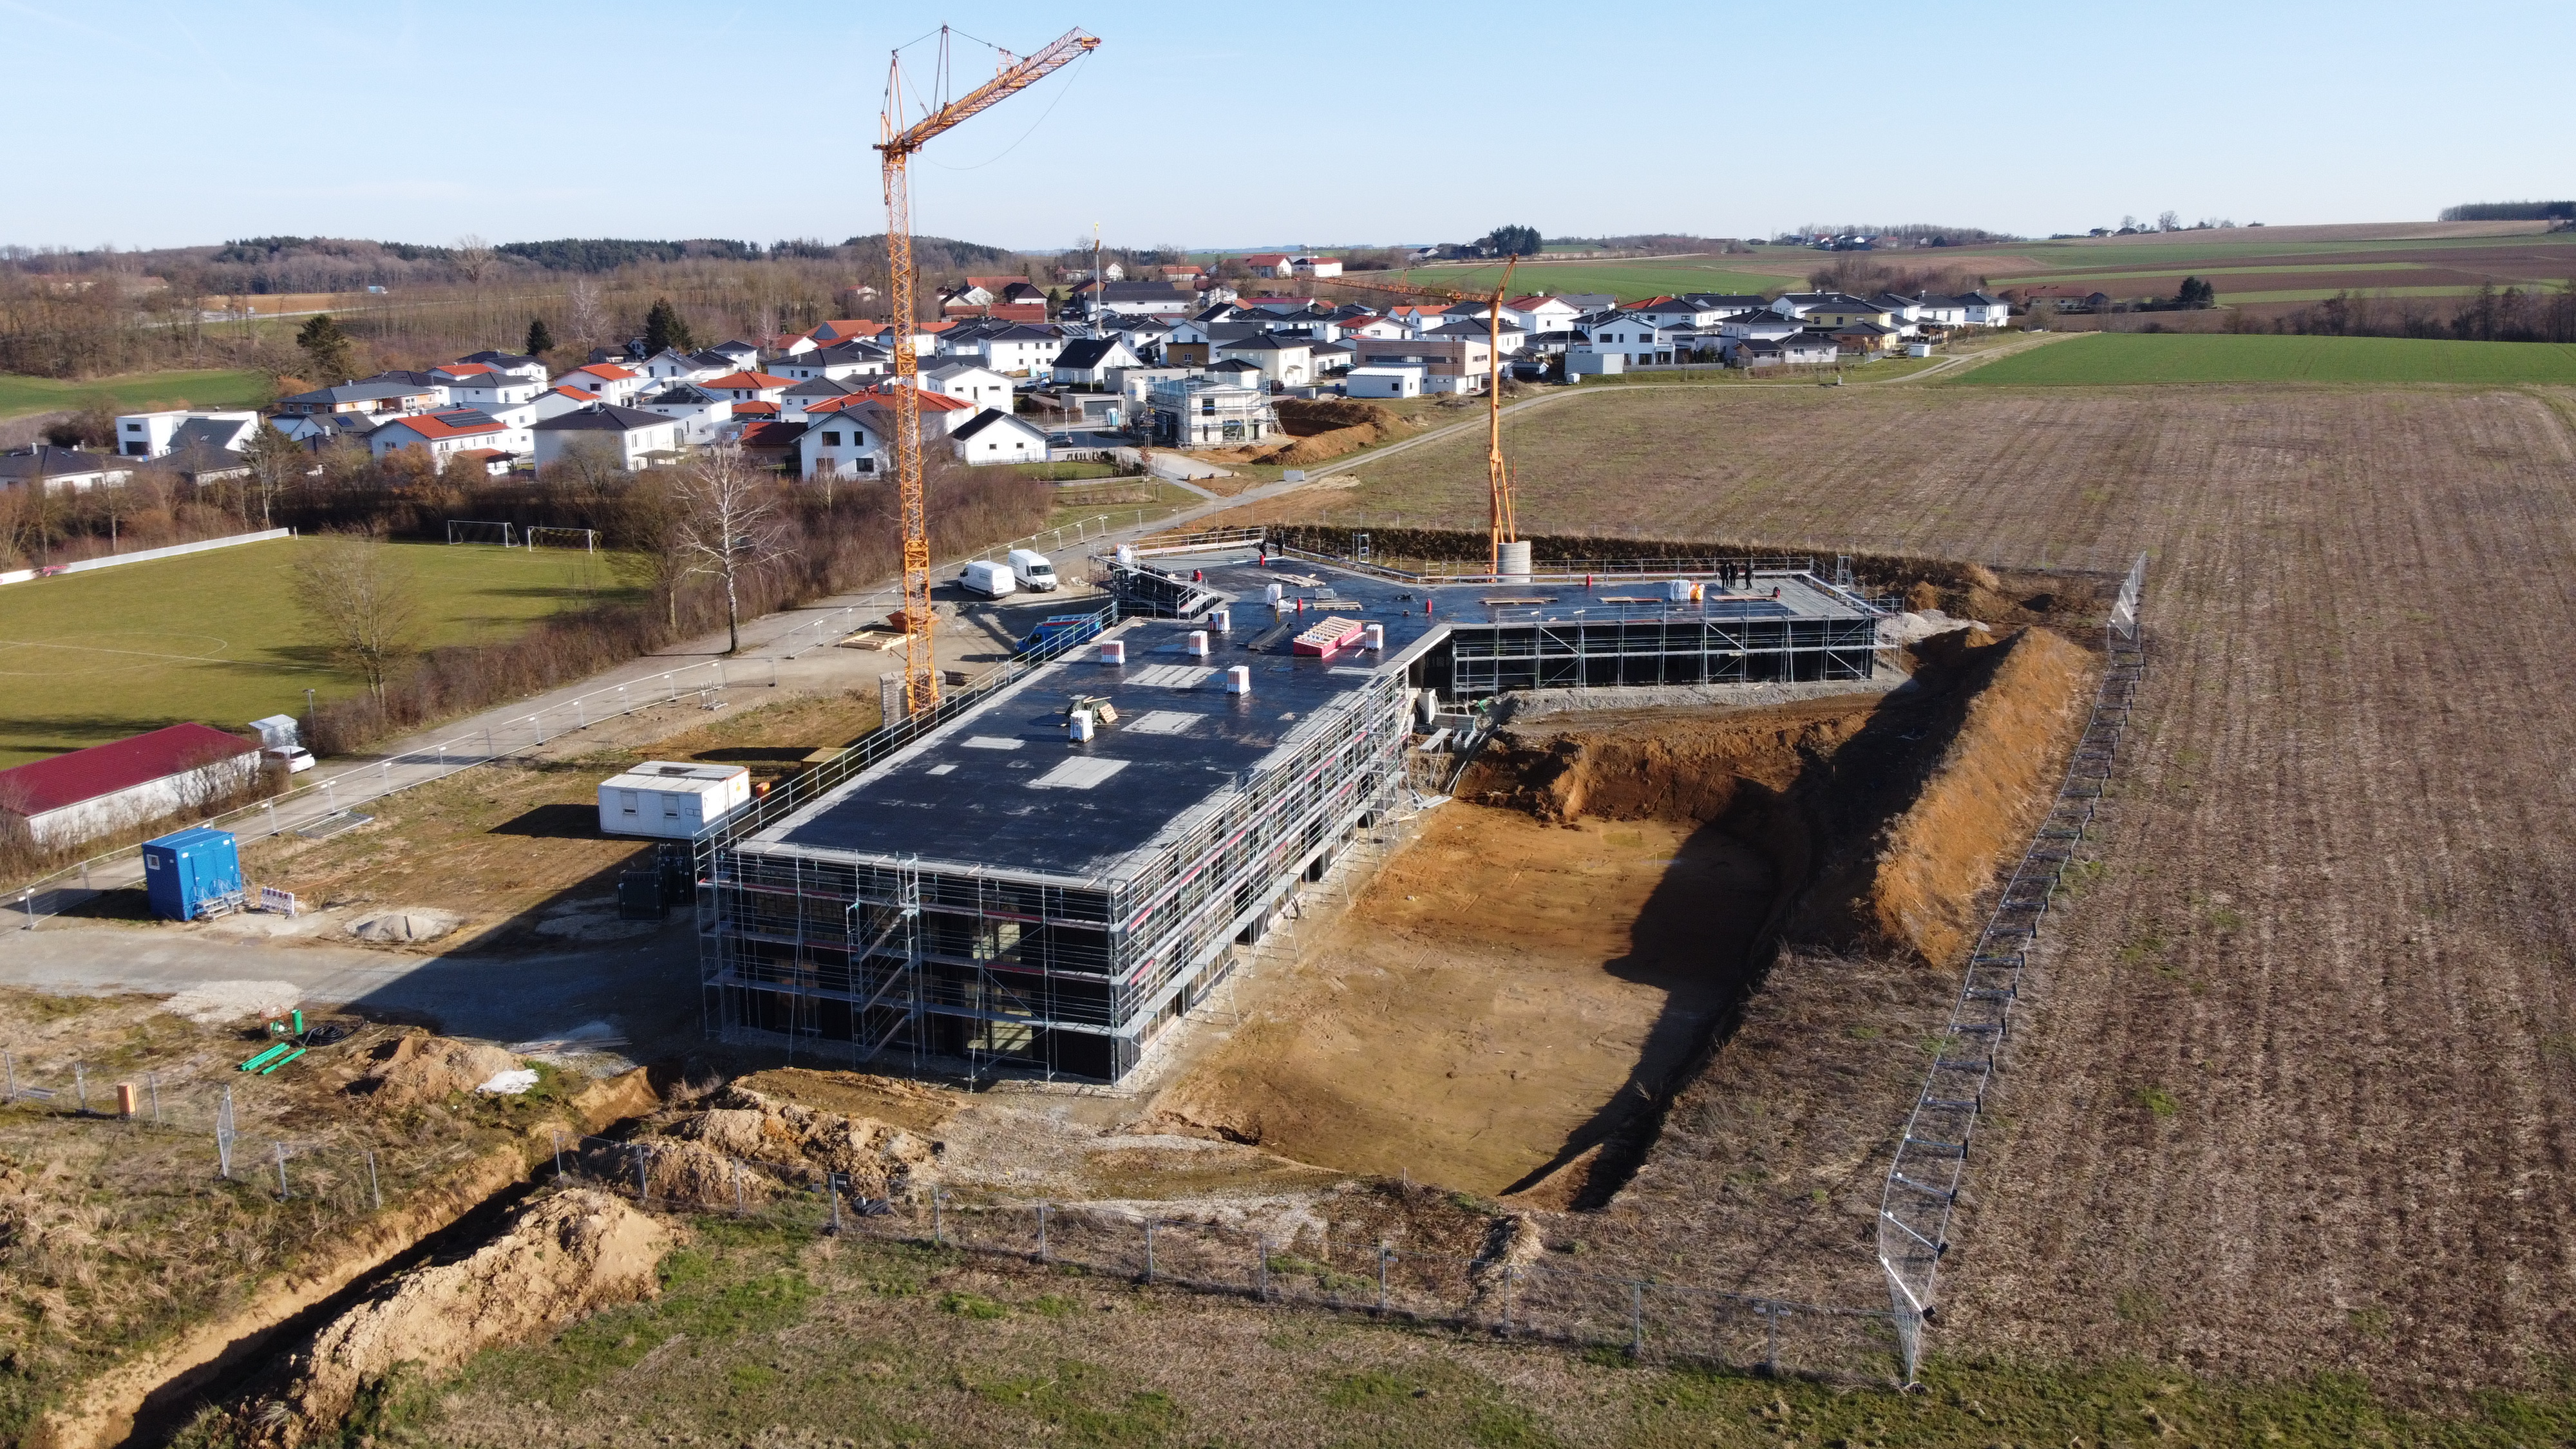 Der Bau der neuen Kindertagesstätte hat begonnen! 
Update vom 06.03.2023